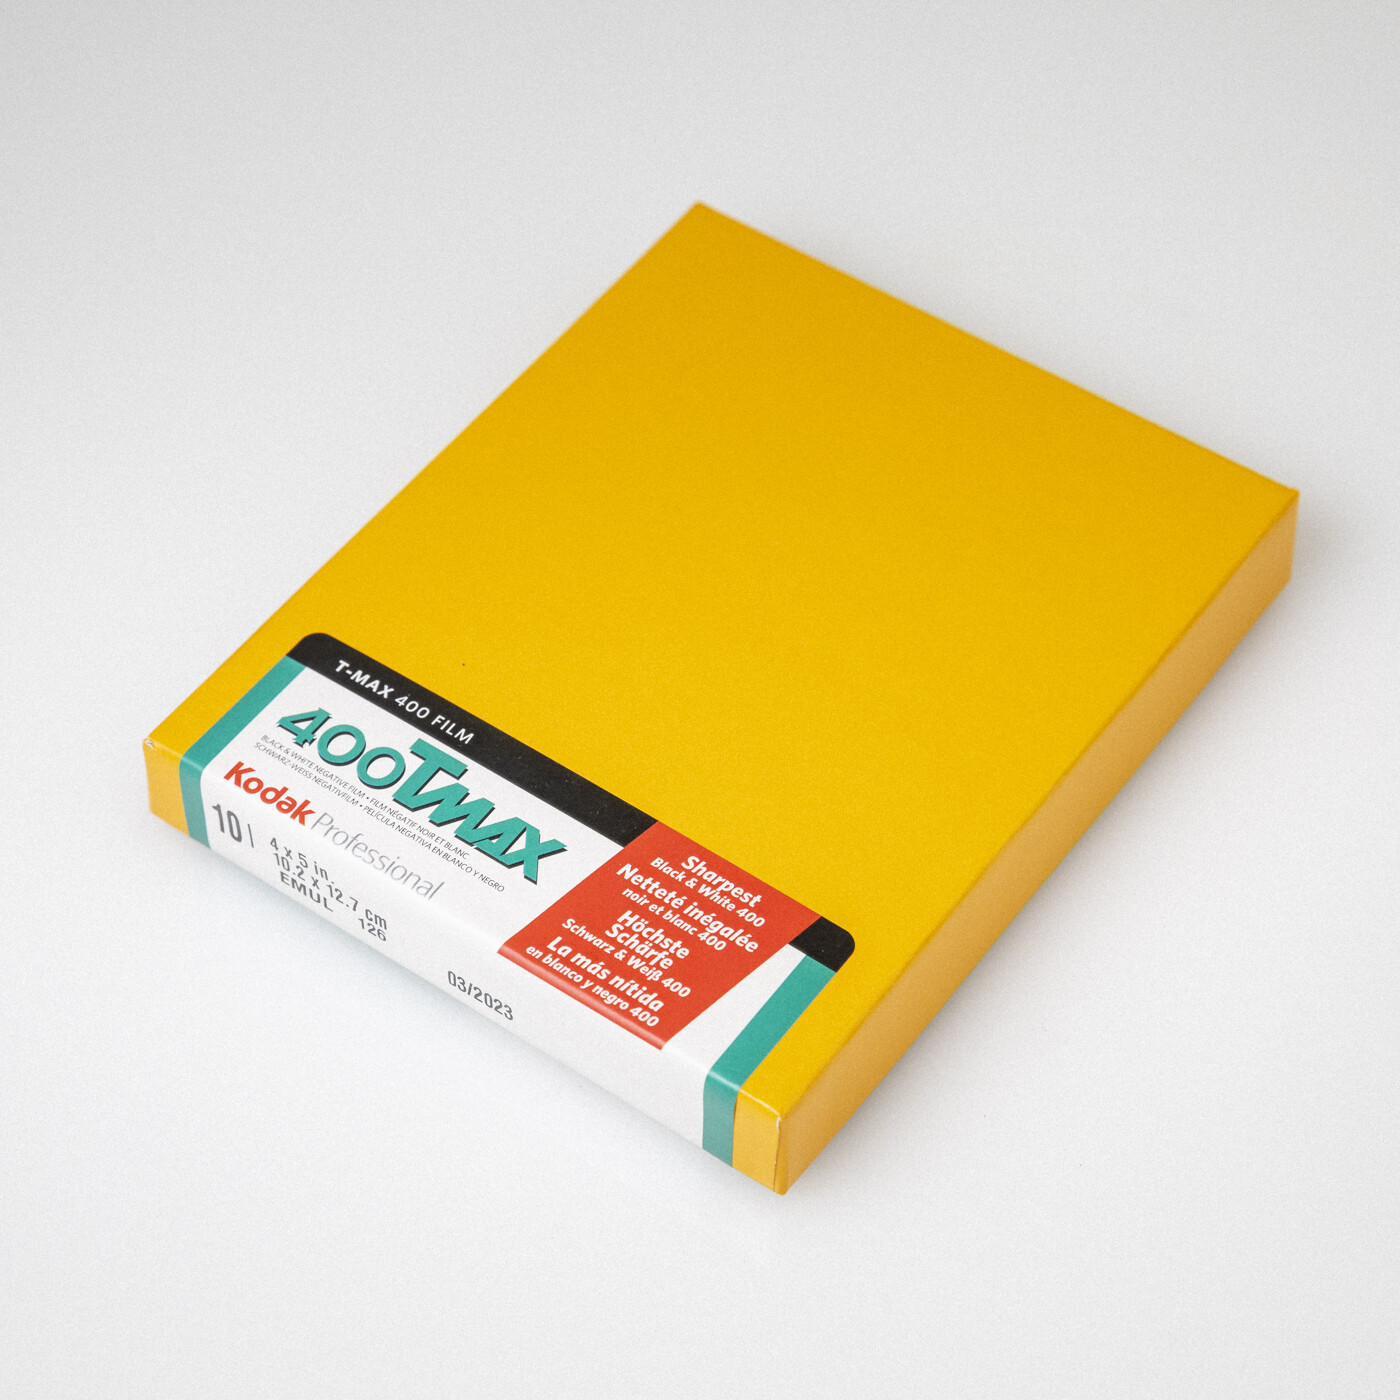 Kodak TMAX 400 4x5 [10 sheets]